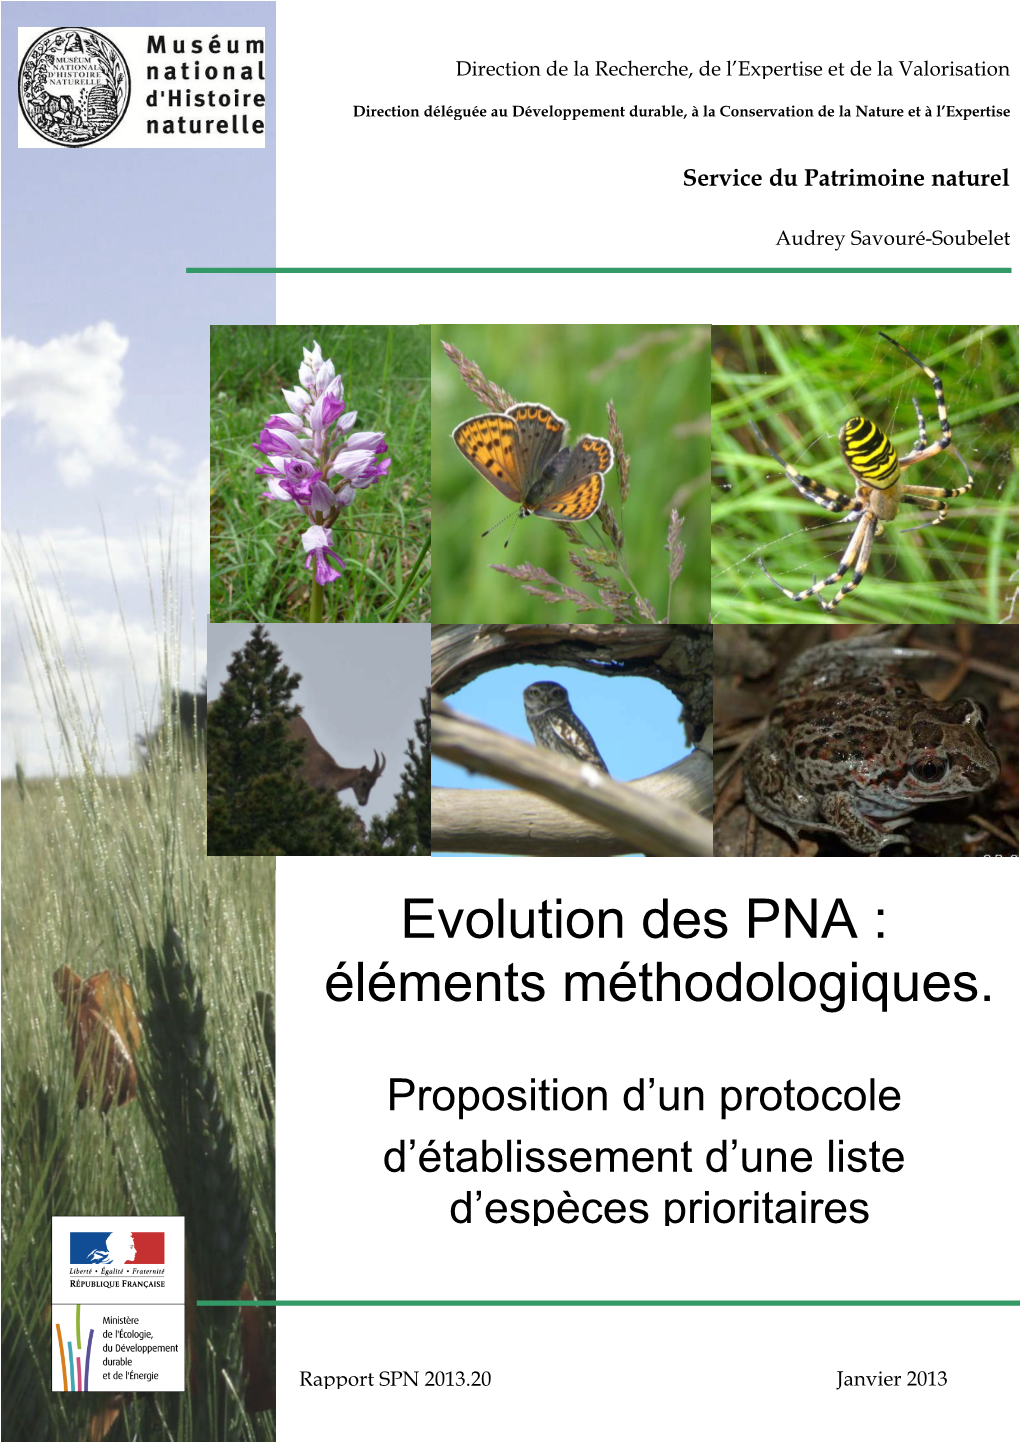 Evolution Des PNA : Éléments Méthodologiques